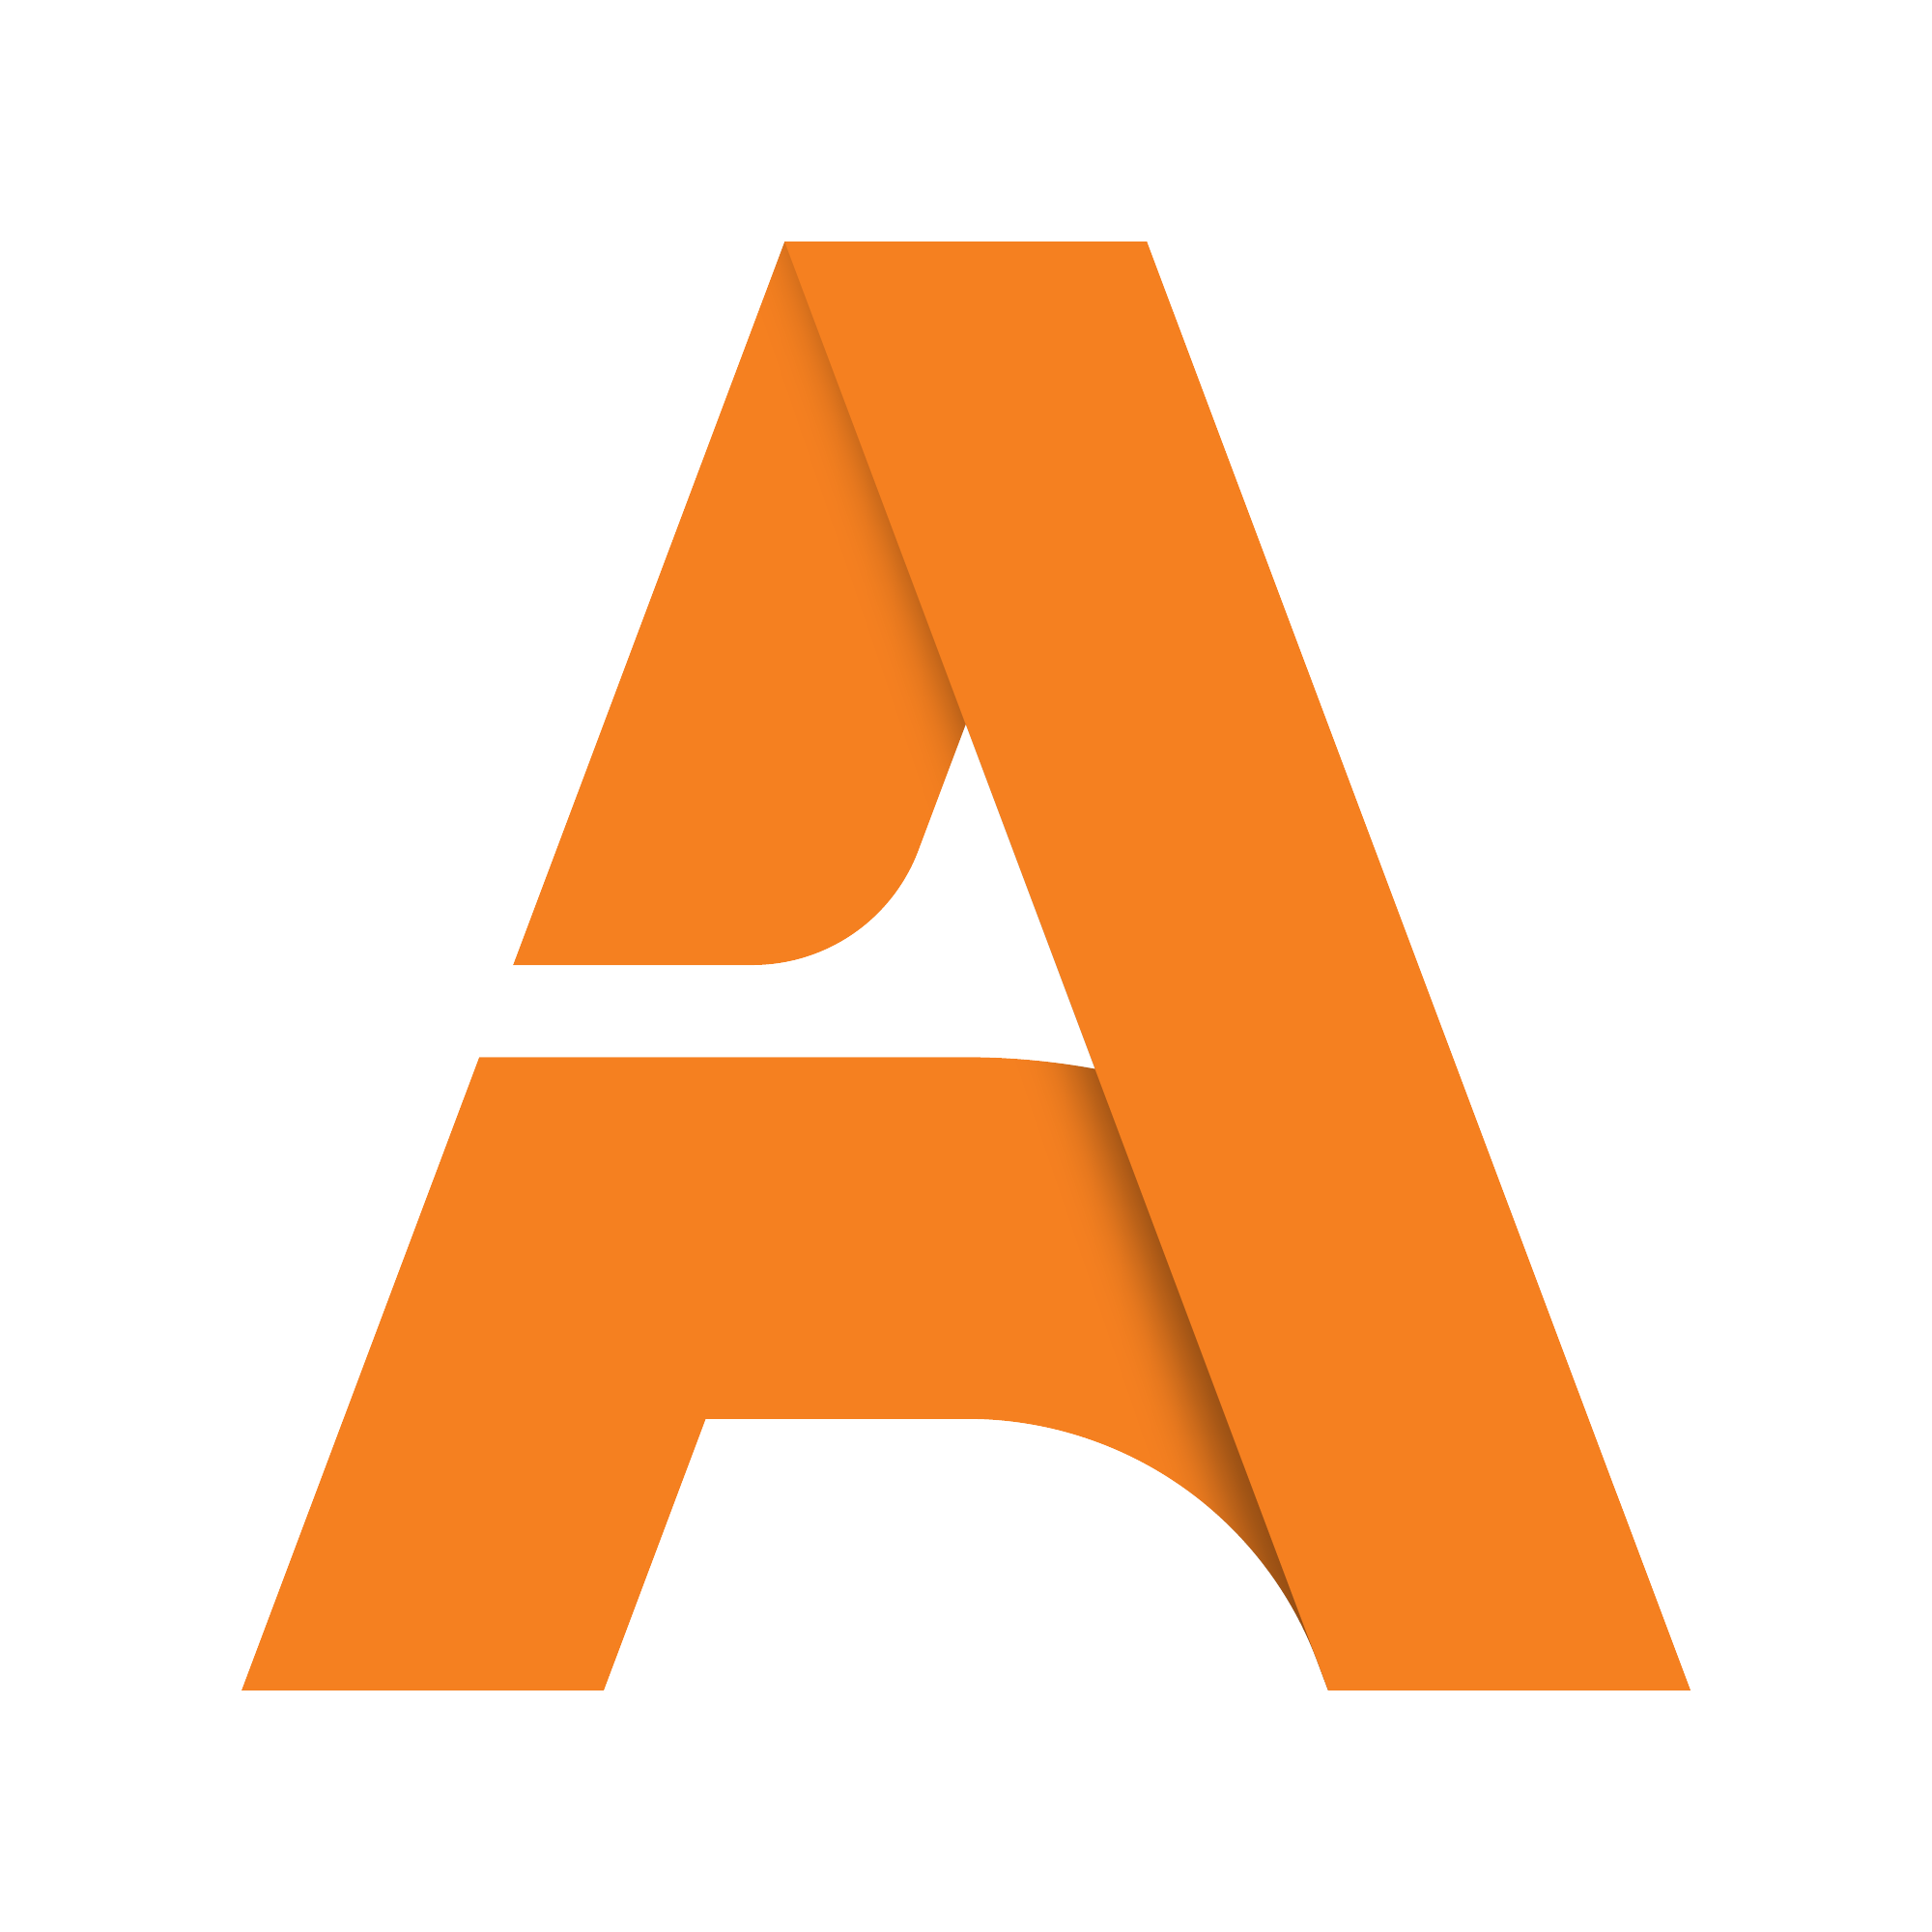 logo-A.png